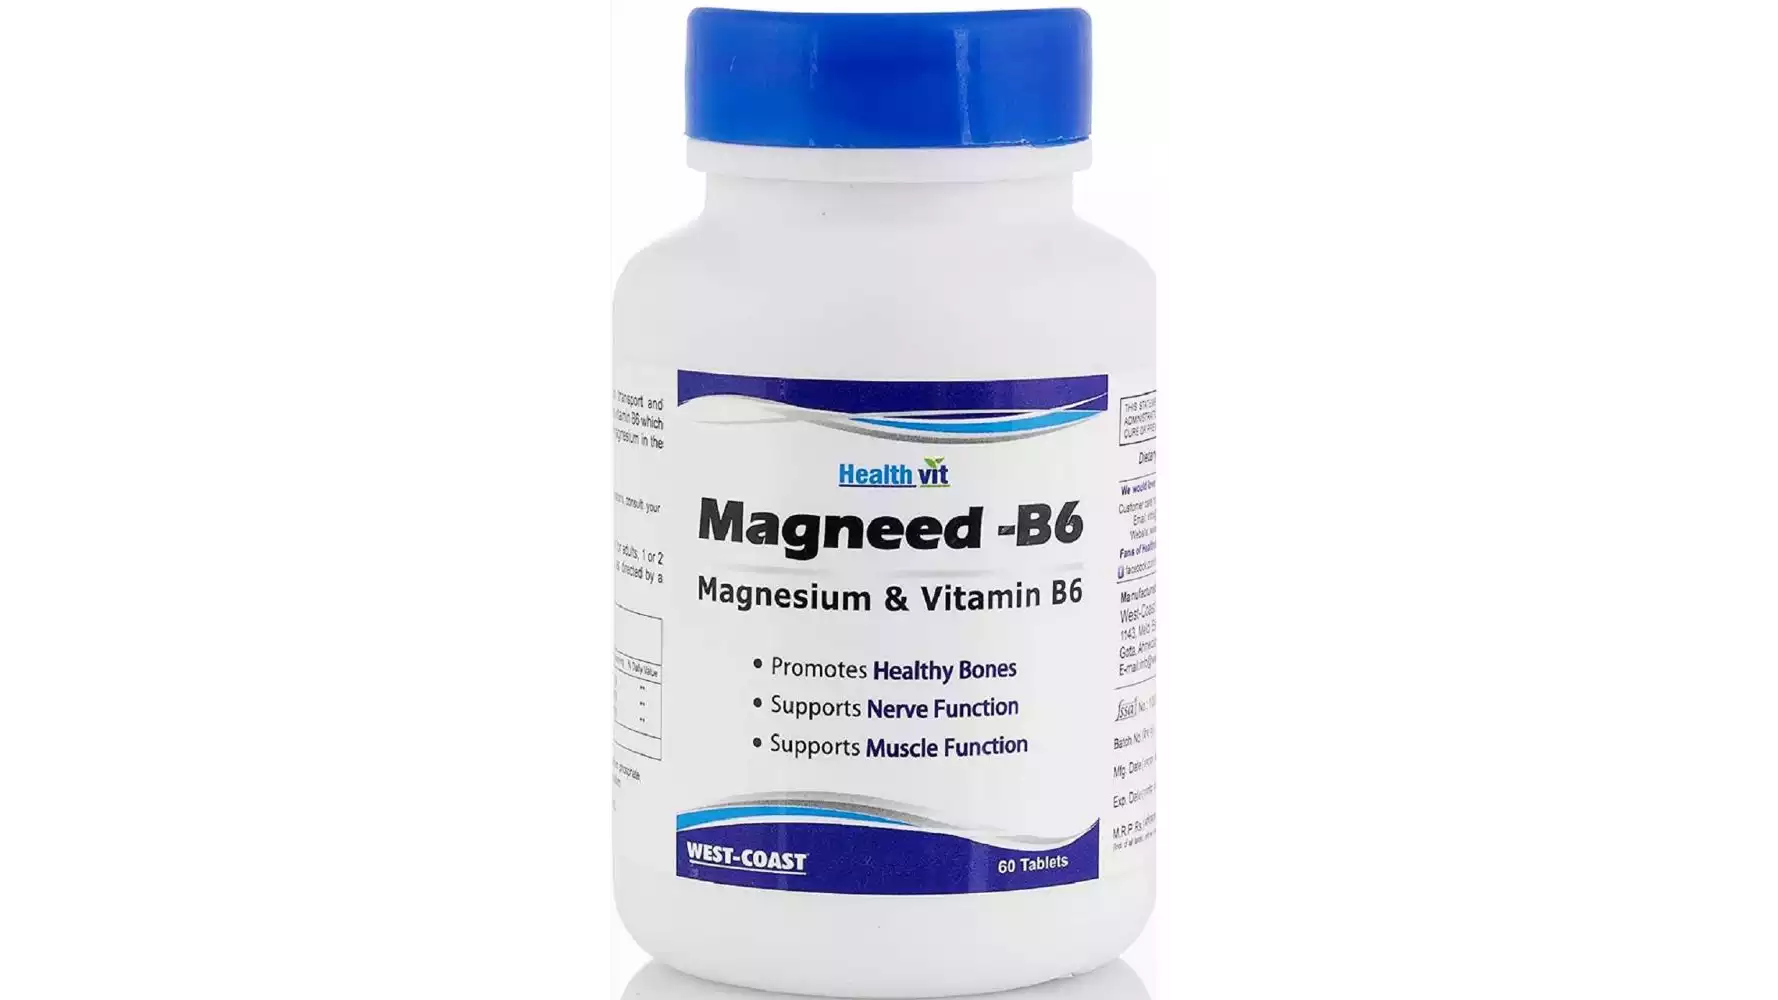 Healthvit Magneed-B6 Magnesium & Vitamin B6 Tablets (60tab)